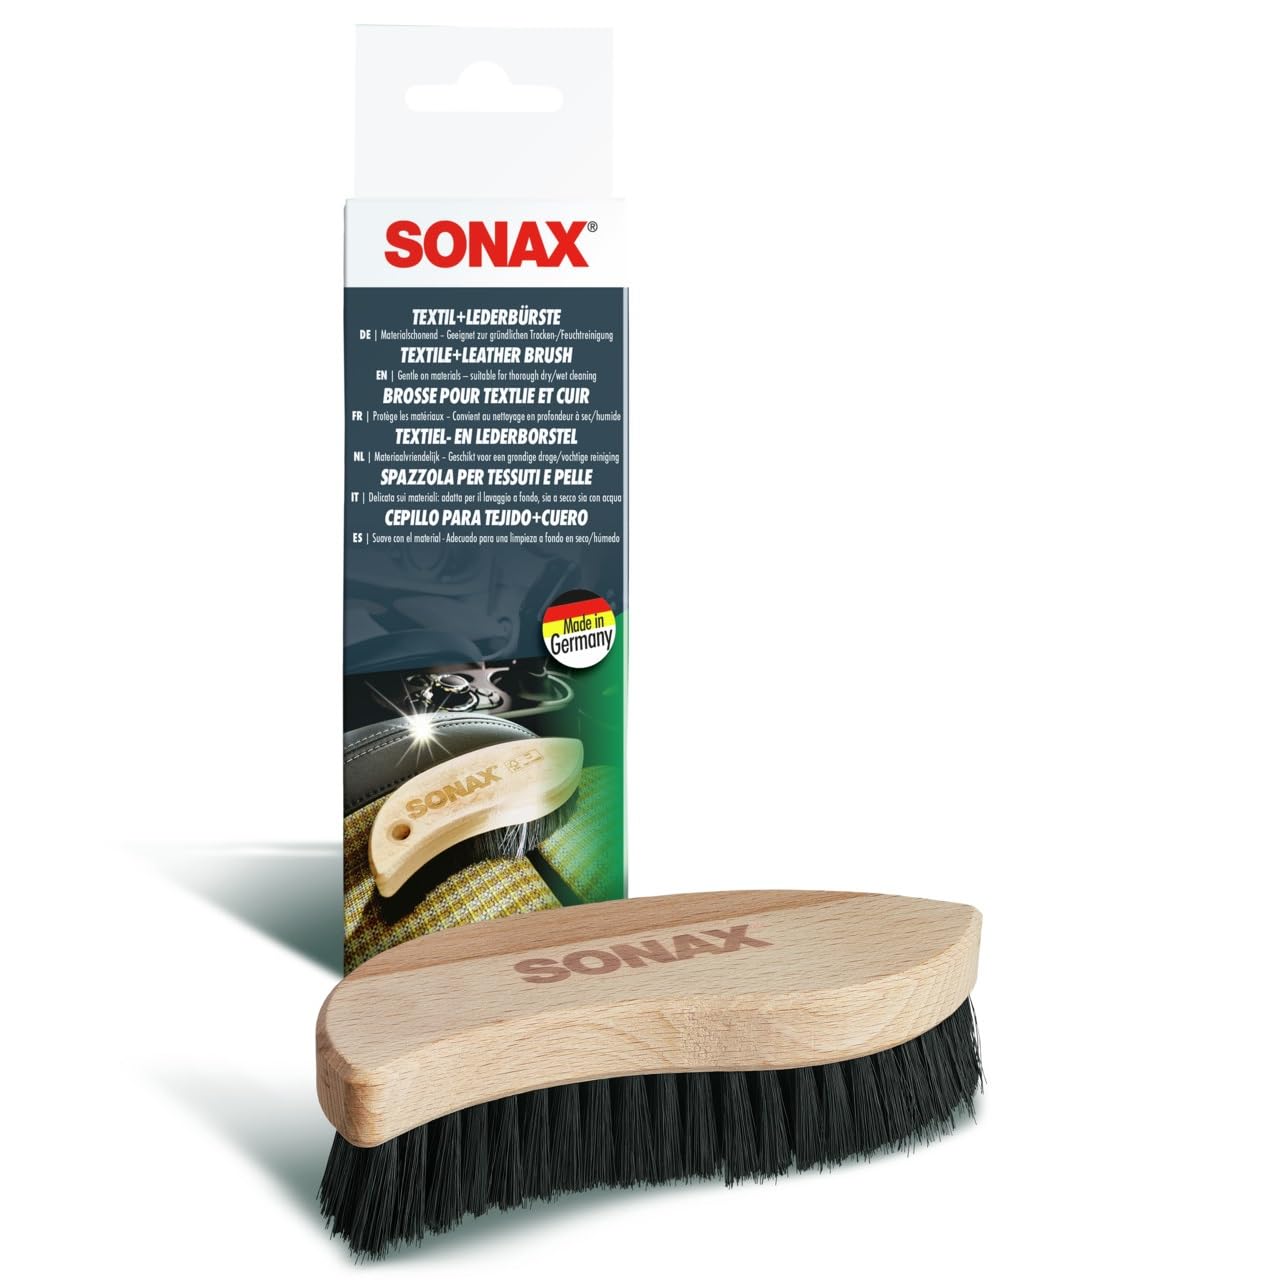 SONAX Textil- & LederBürste (1 Stück) zur Trocken- und Feuchtreinigung von Textilien sowie zur schonenden Reinigung von Glattleder-Oberflächen | Art-Nr. 04167410 von SONAX